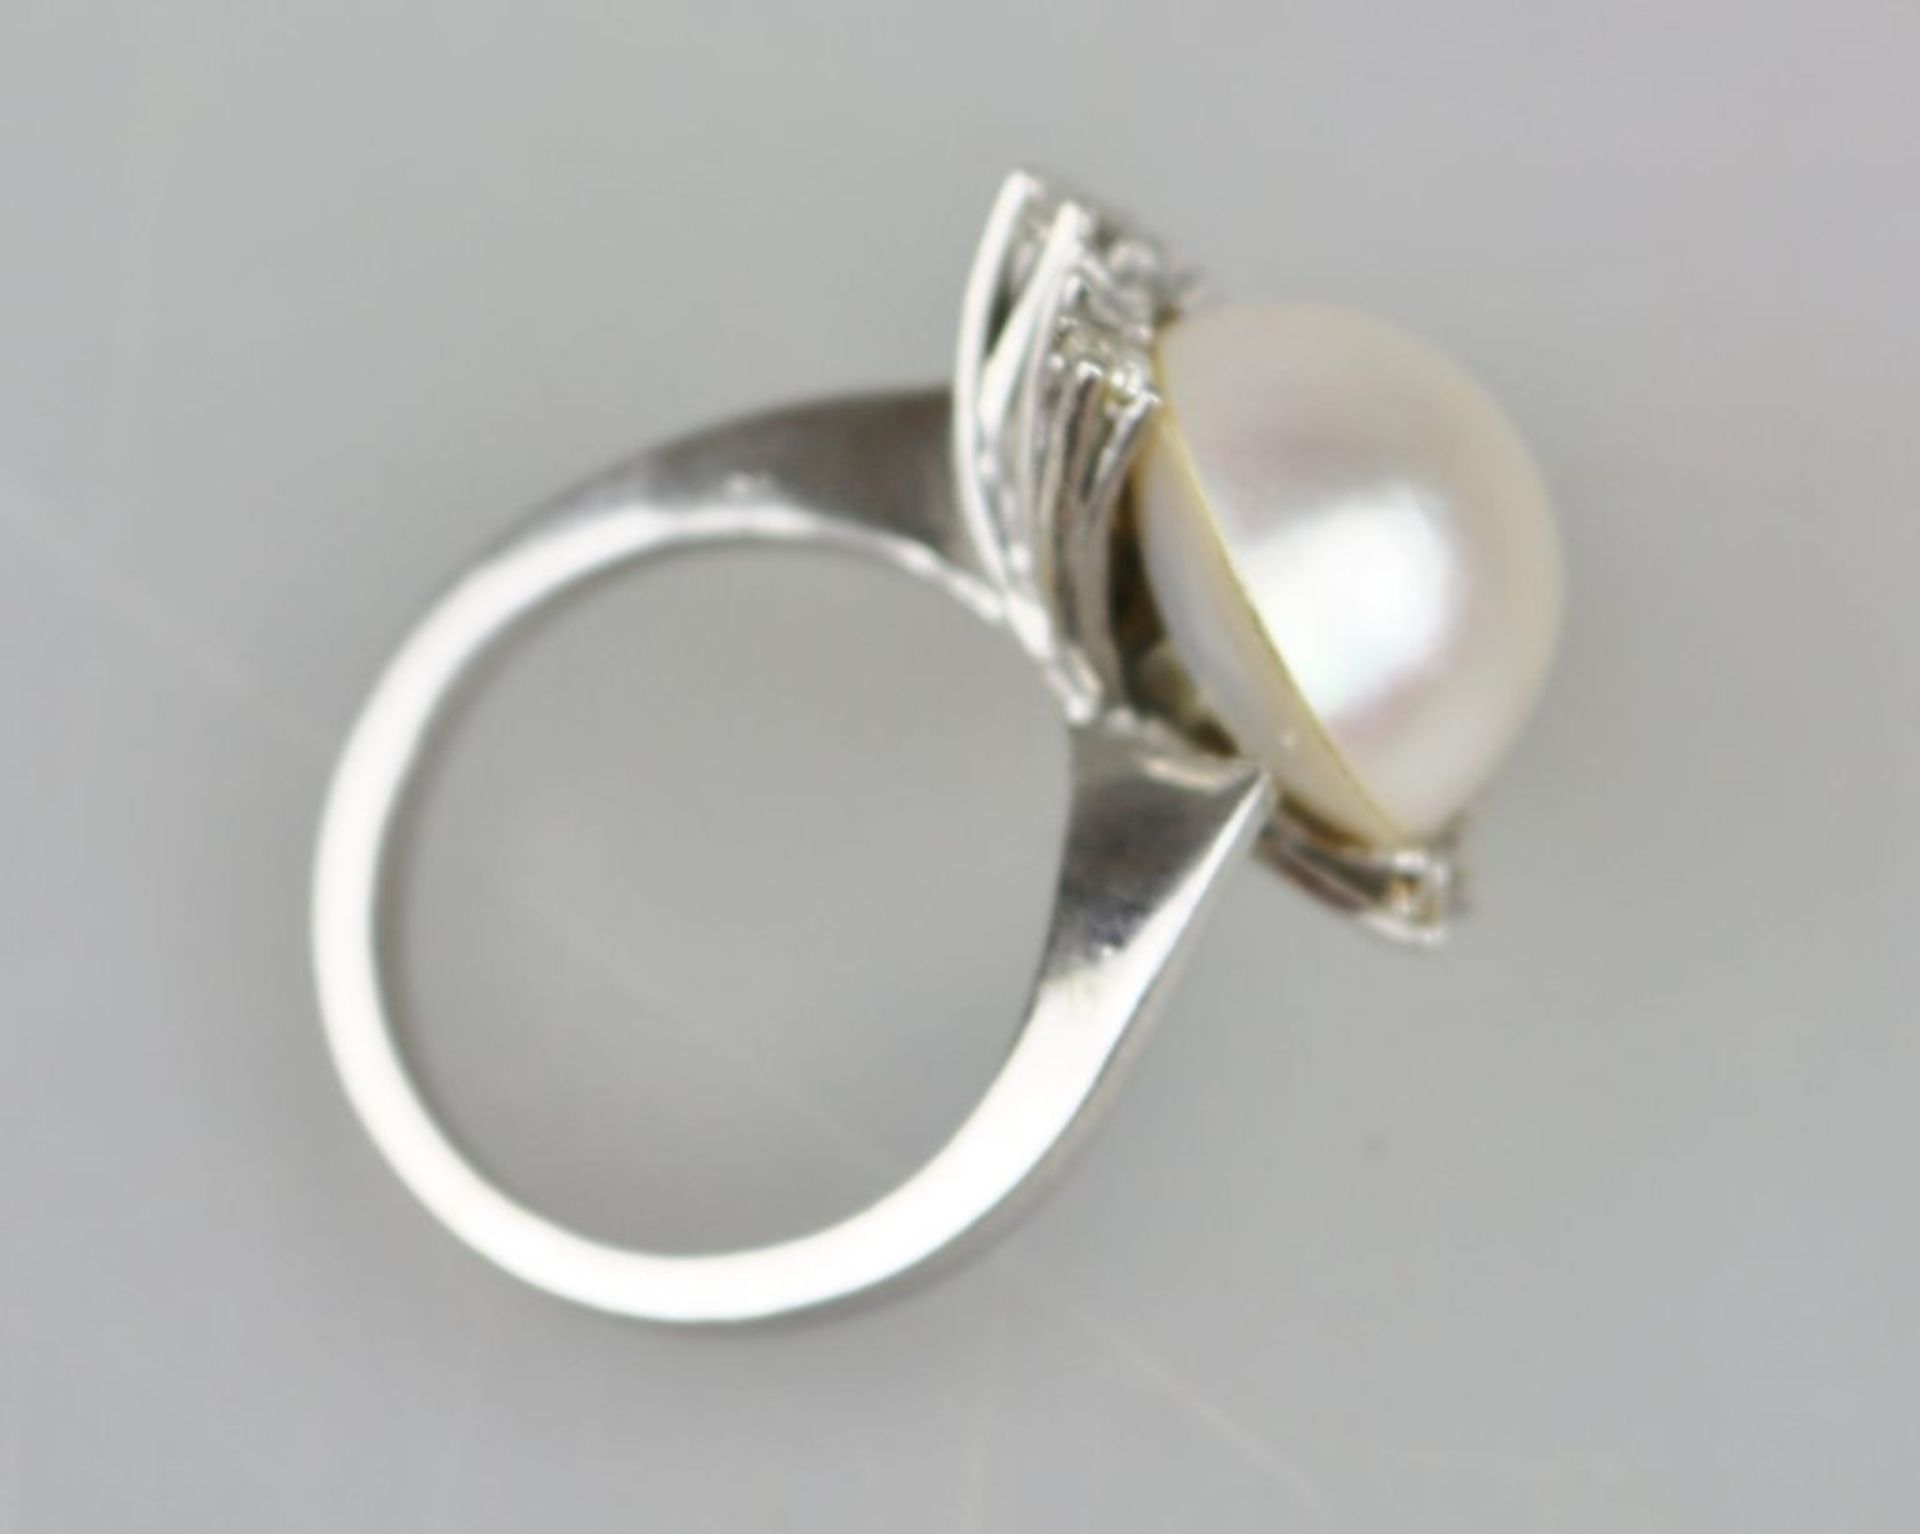 Brillantring mit Mabe-Perle, 585er Weißgold, Perle halbseitig umringt von 14 Brillanten, jeweils - Bild 3 aus 3